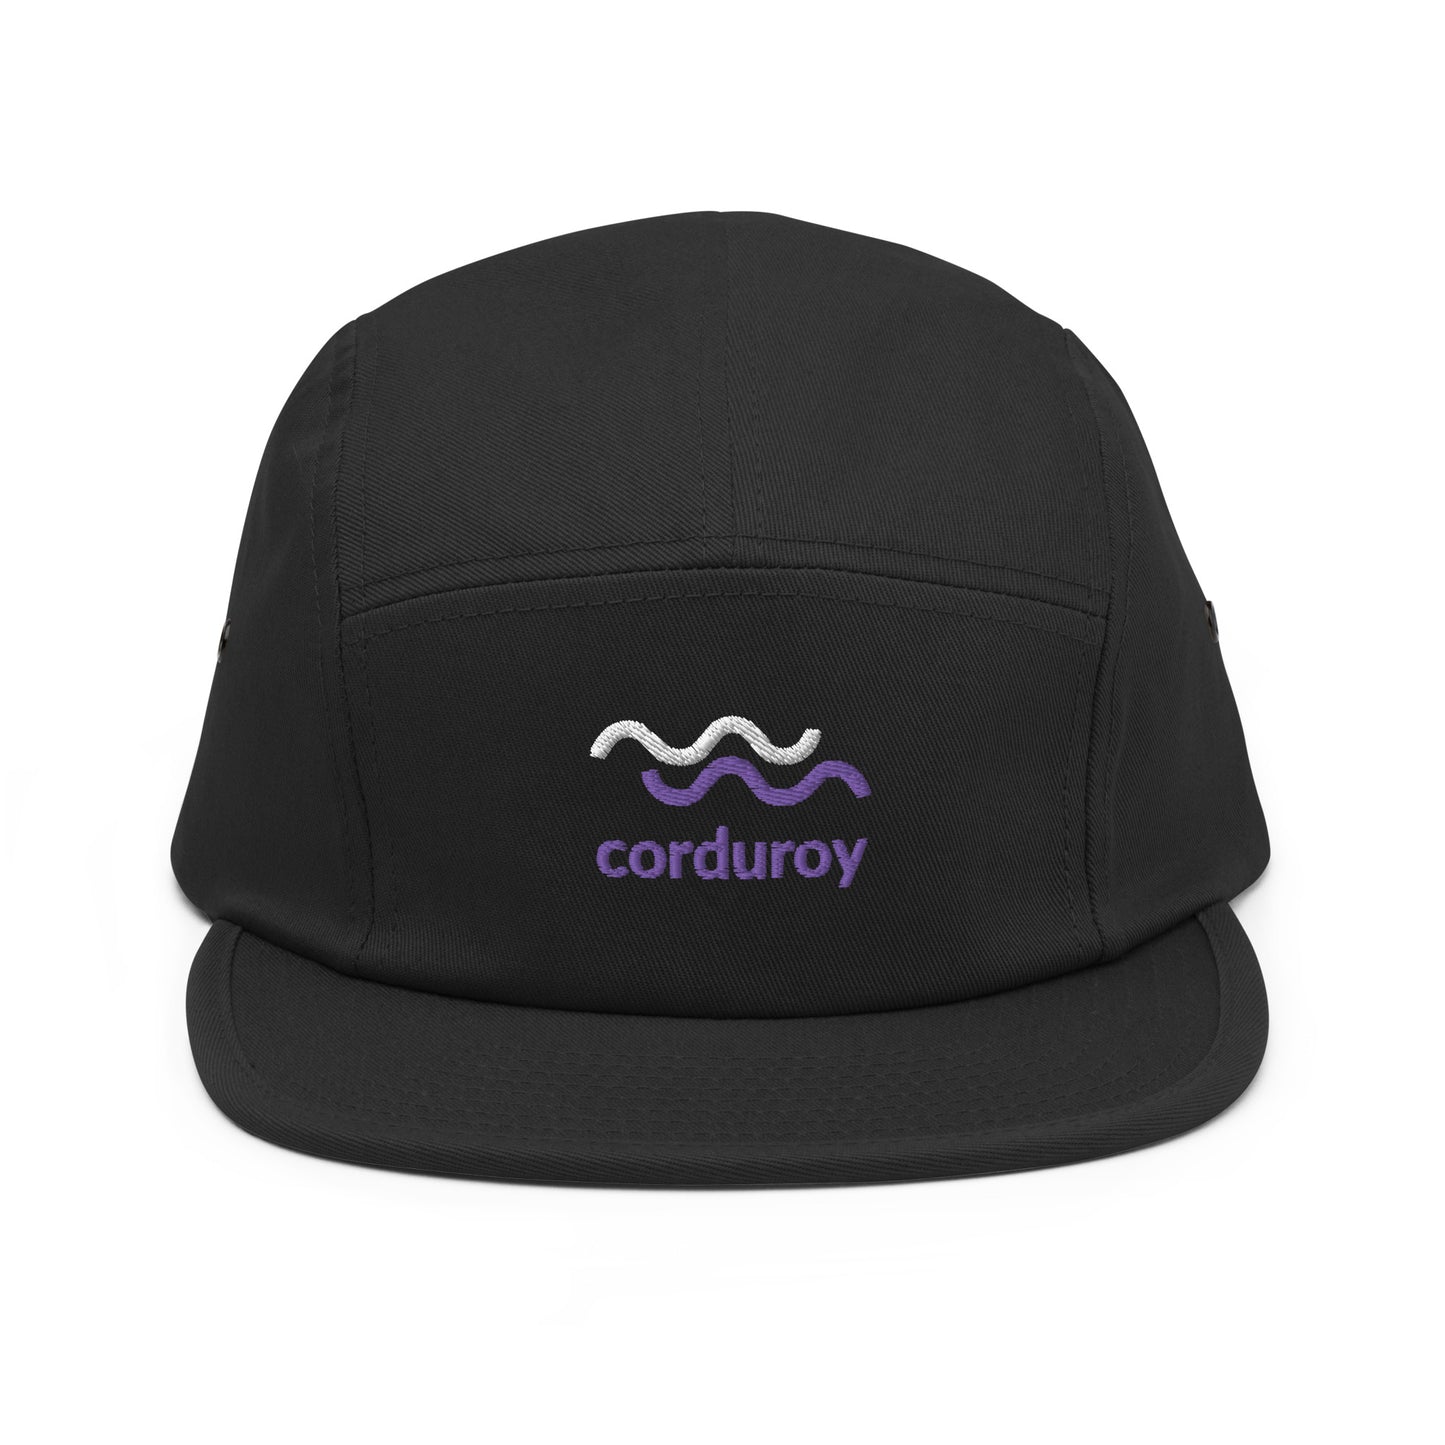 The Corduroy Cap